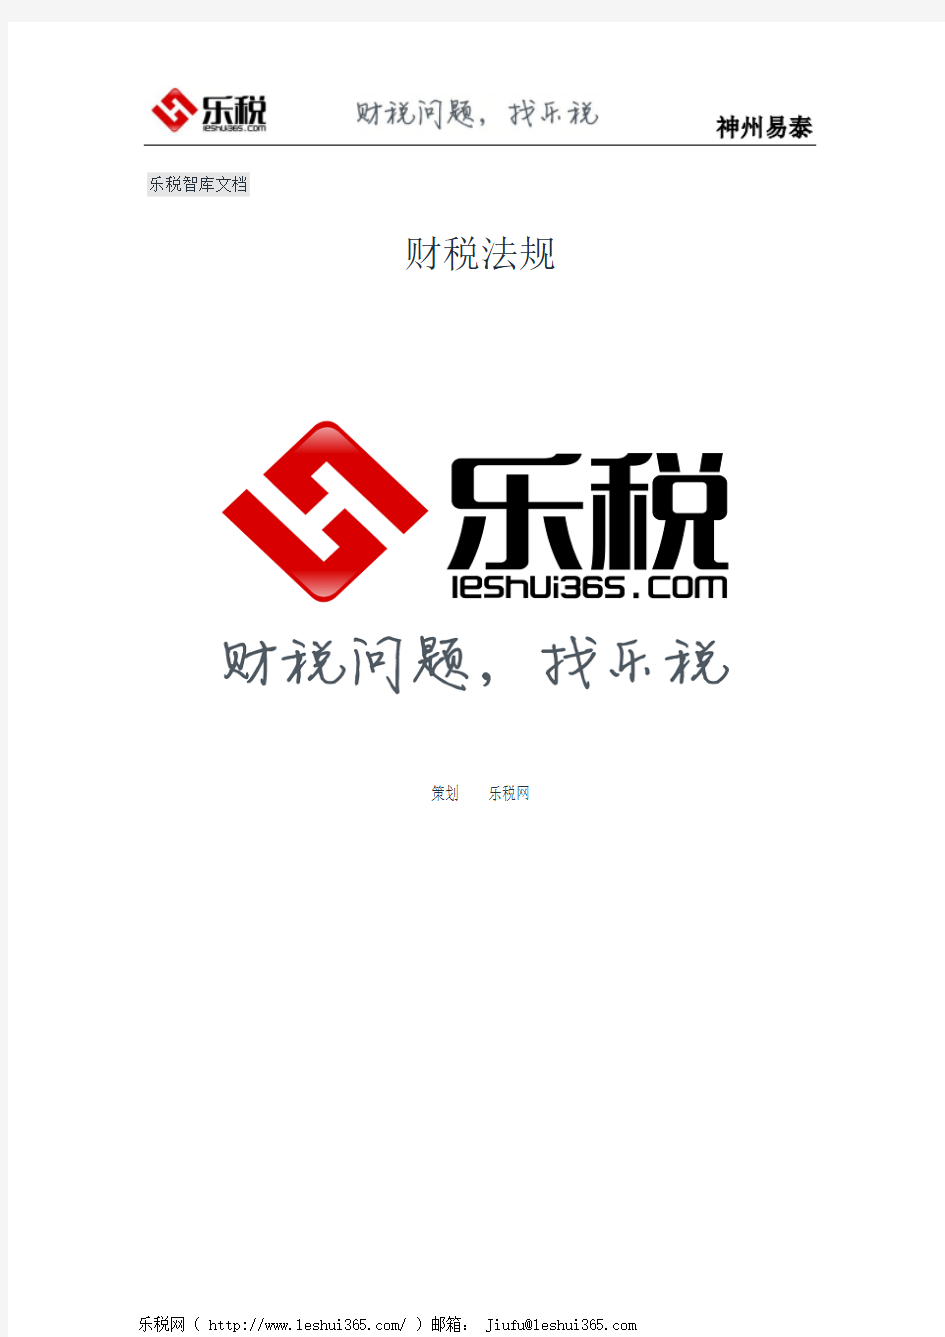 重庆市地方税务局关于规范个人所得税扣除标准的通知